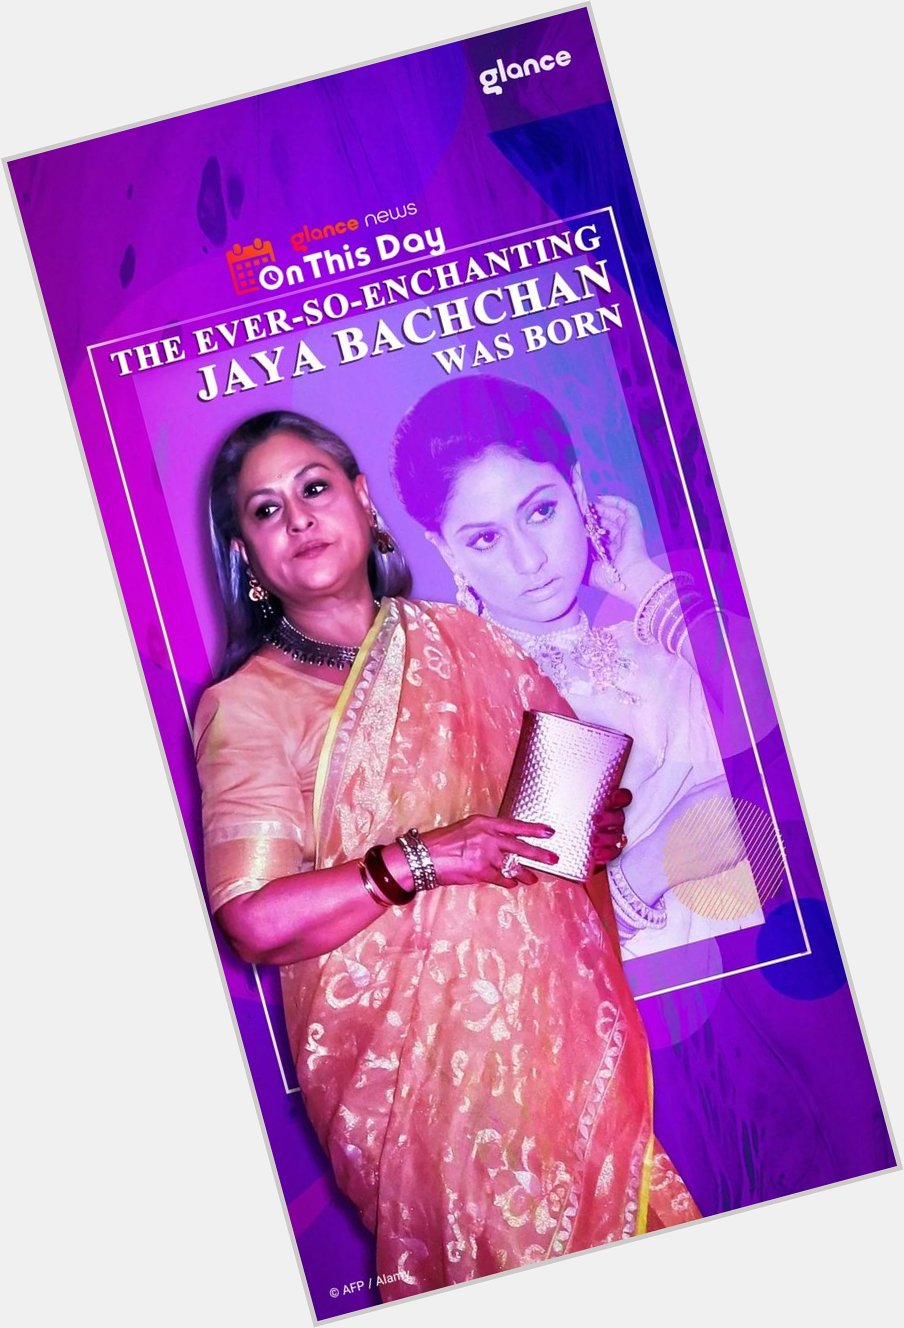  Jaya Bachchan was born
Happy birthday Jaya Bachchan ji... 